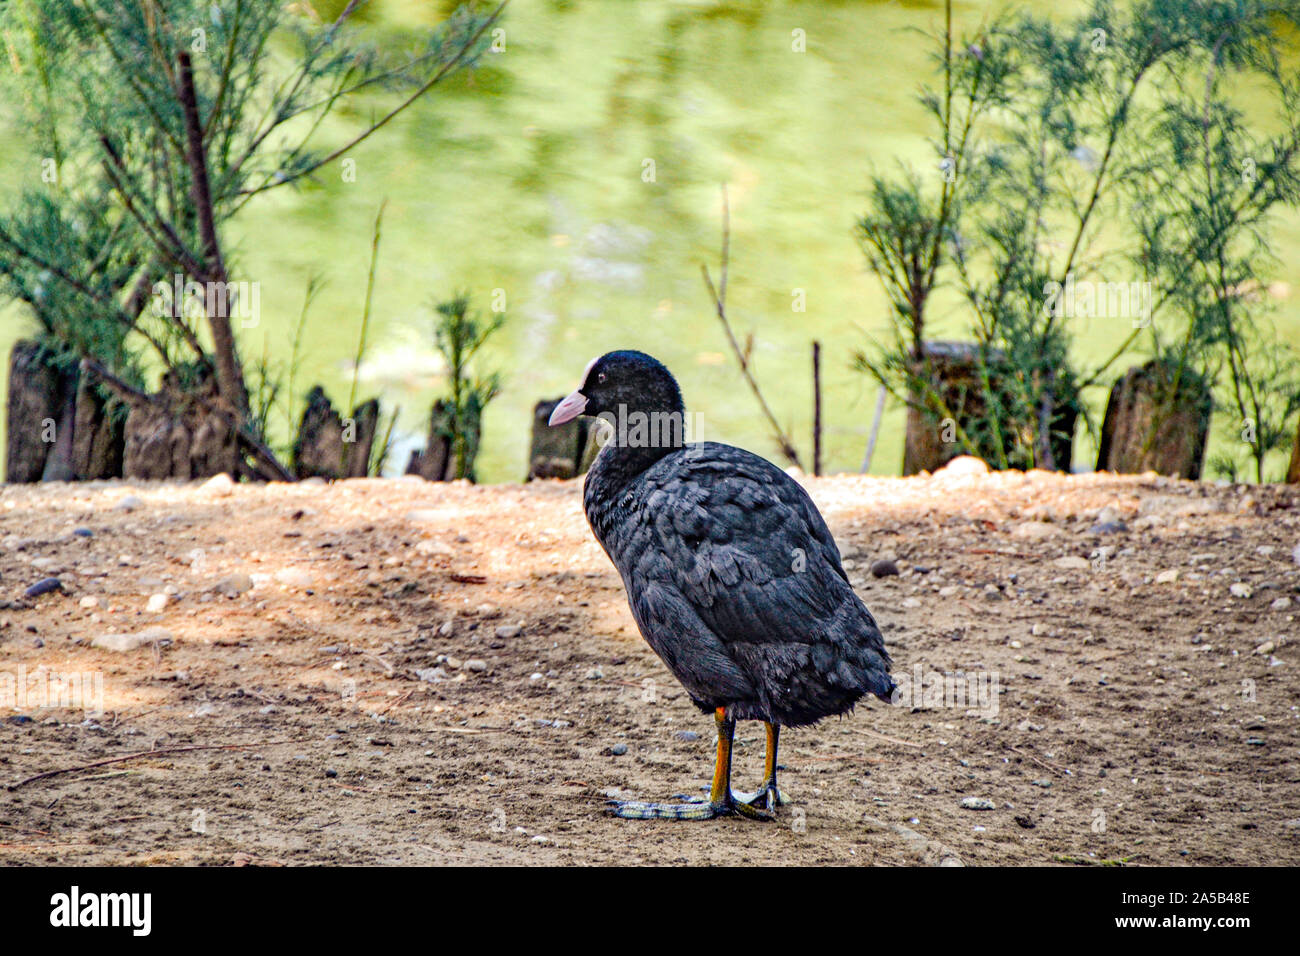 Zoo Punta Verde in Lignano | Vögel in voller Pracht Punta Verde Zoo in Lignano | Birds in full glory Stock Photo